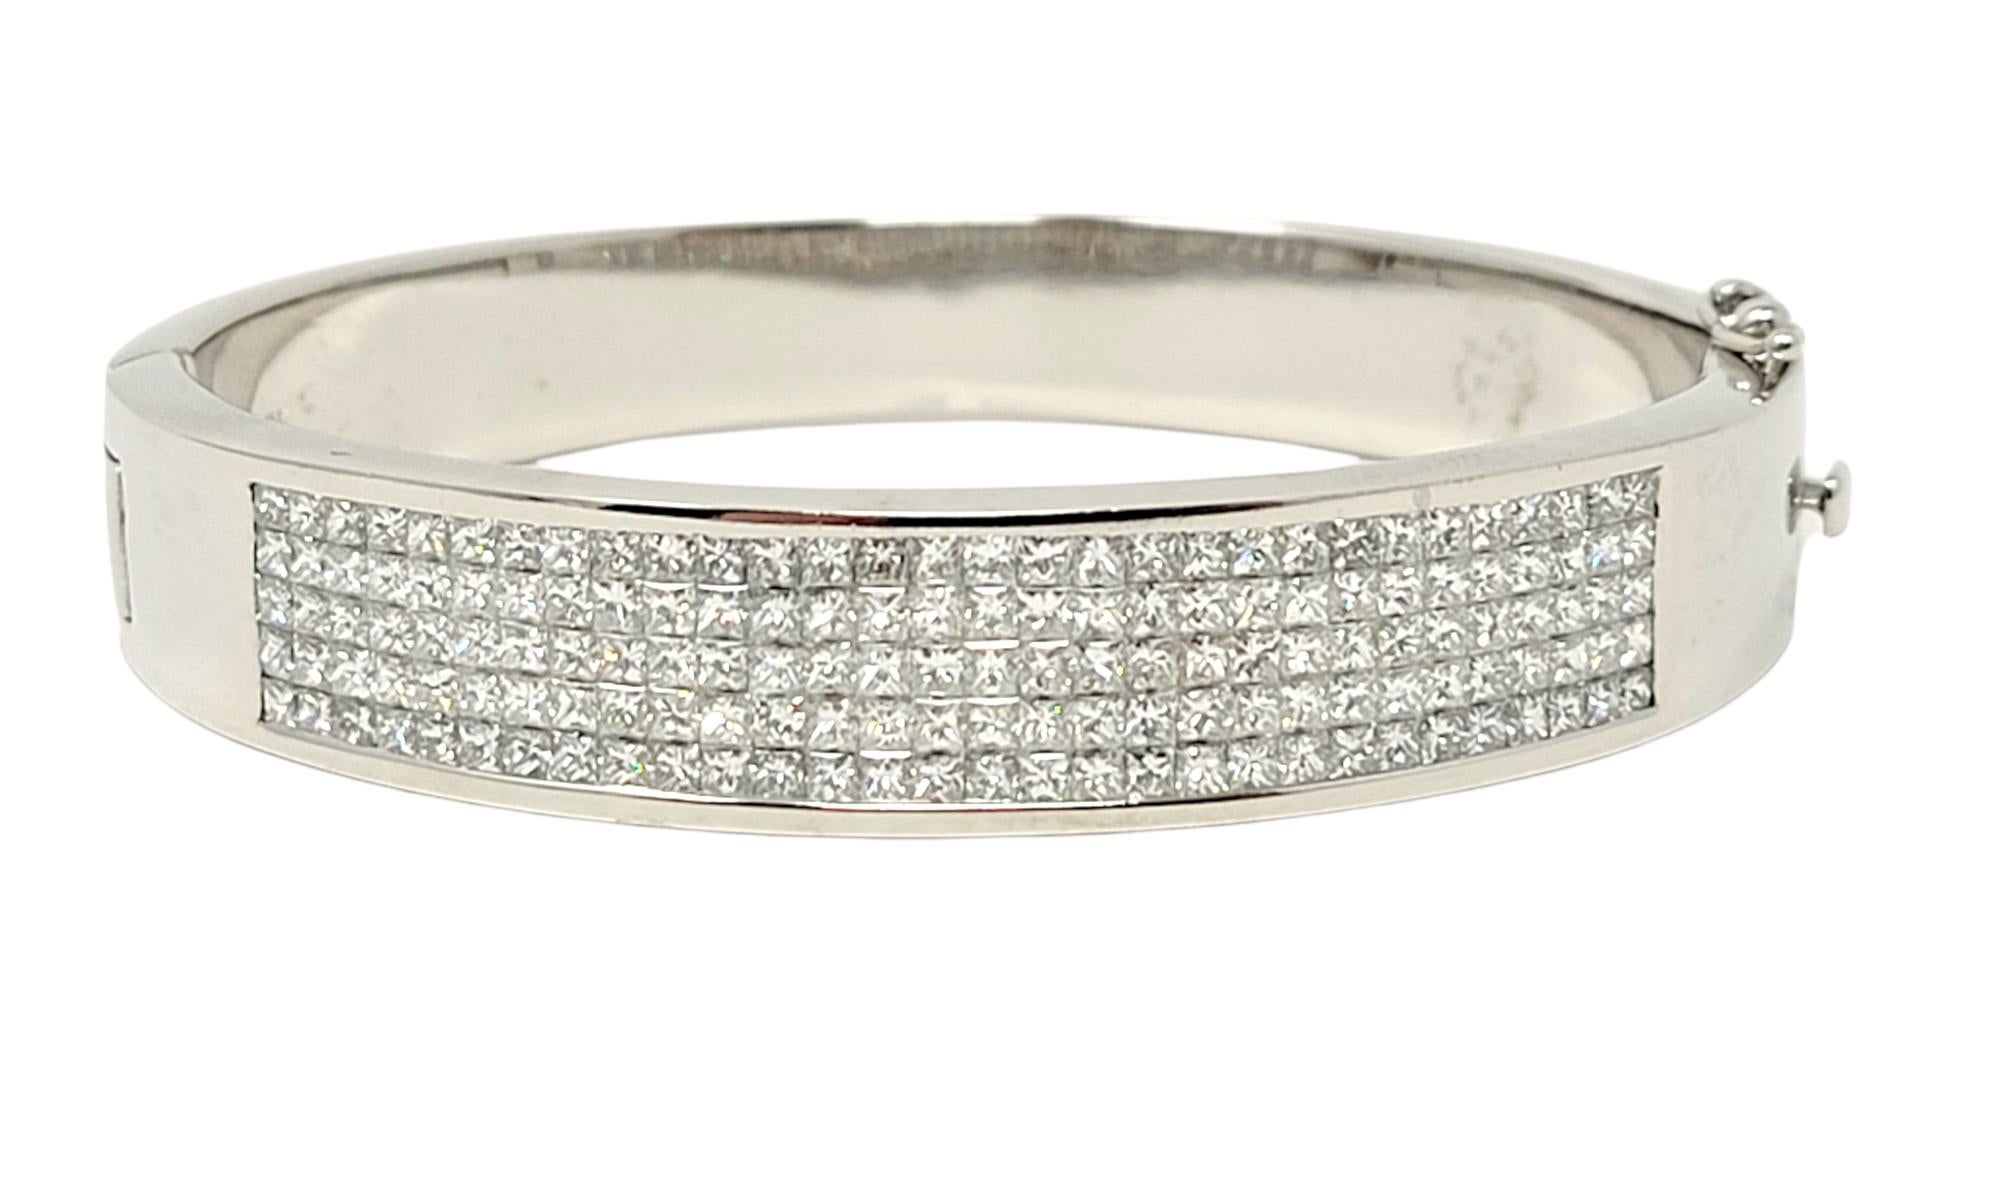 Dieser atemberaubend funkelnde, moderne Diamant-Armreif ist die perfekte Ergänzung für Ihre Schmuckgarderobe. Das schlichte, aber elegante Design dieses wunderschönen, modernen Schmuckstücks wird durch 150 eisweiße natürliche Diamanten im